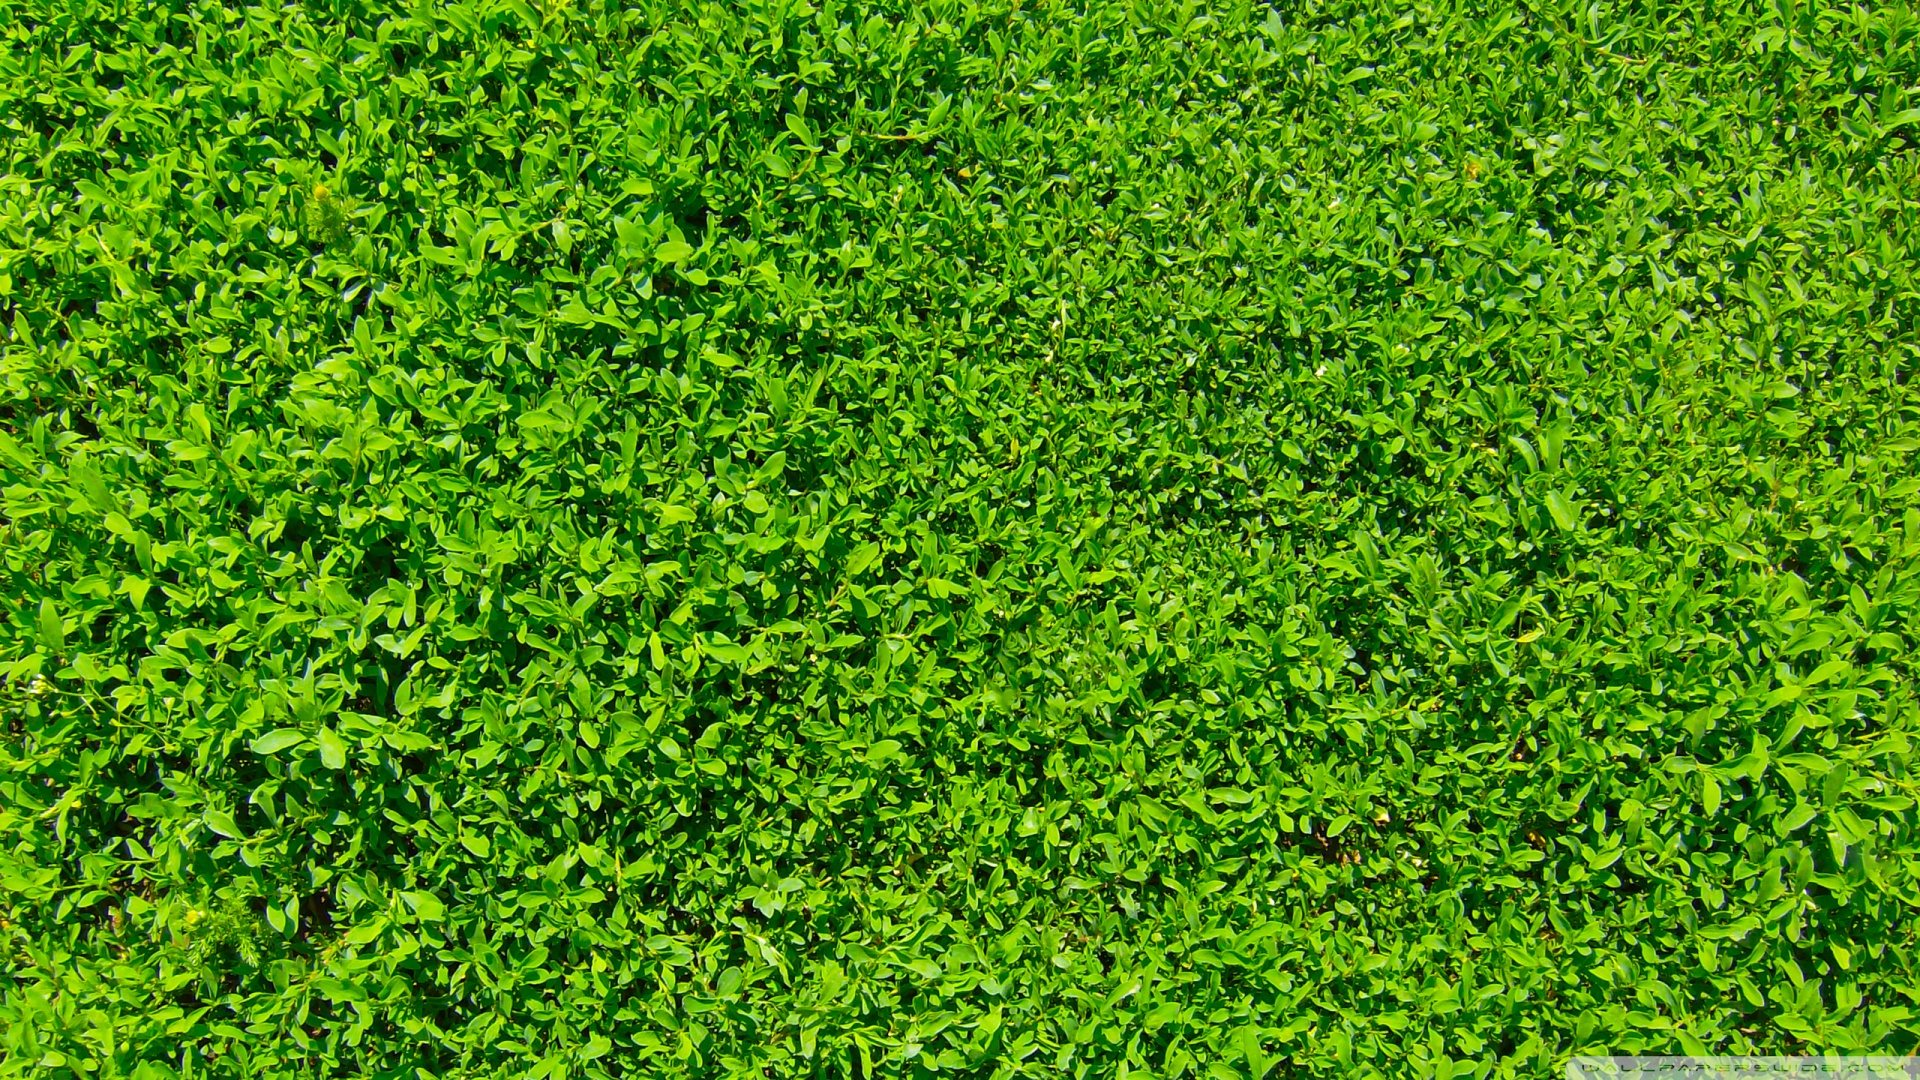 grass wallpaper green images 1920x1080